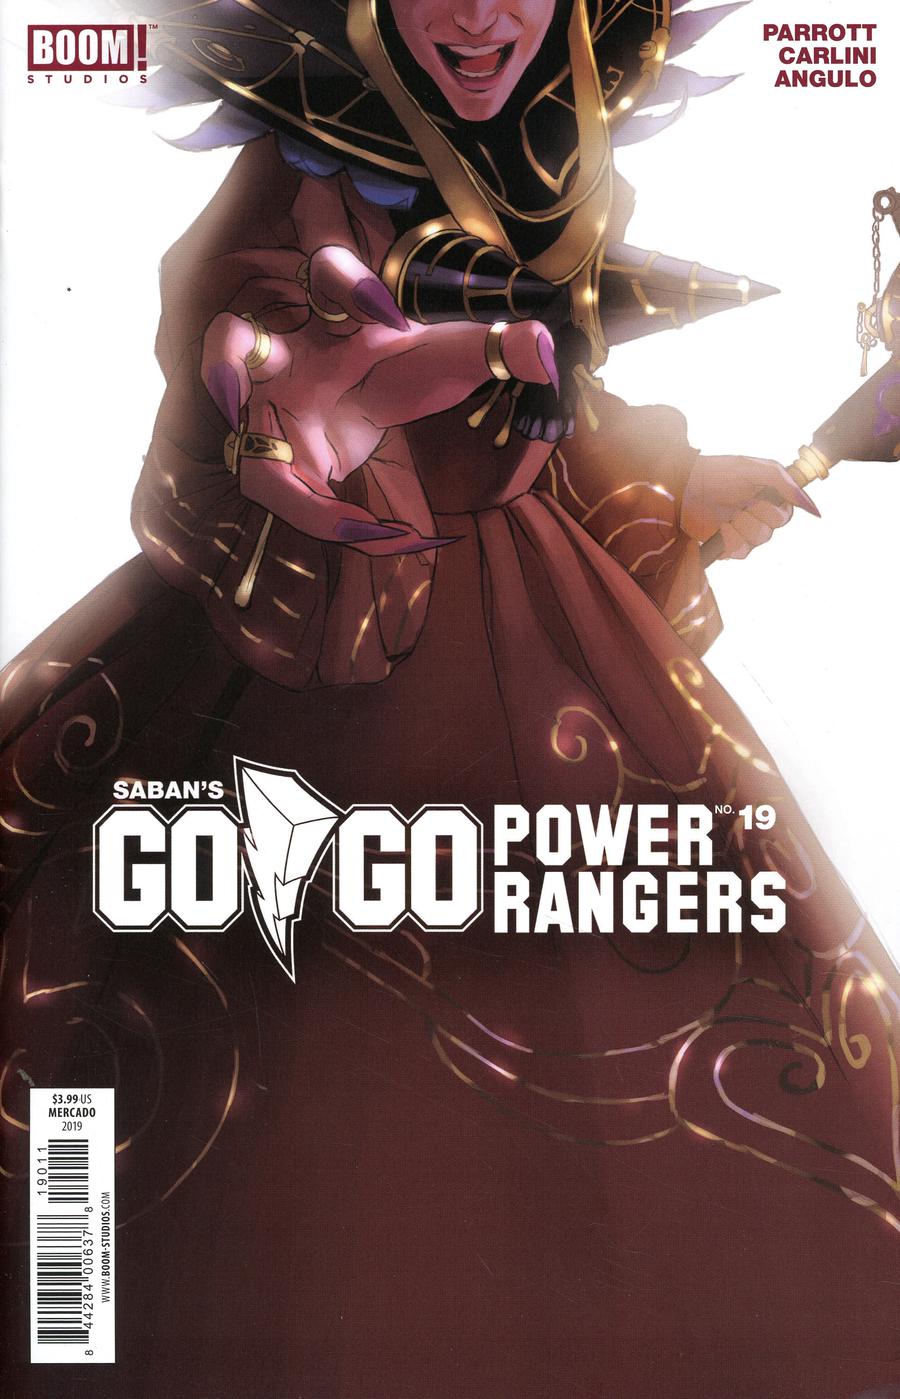 Sabans Go Go Power Rangers #19 Cover B Regular Miguel Mercado Cover